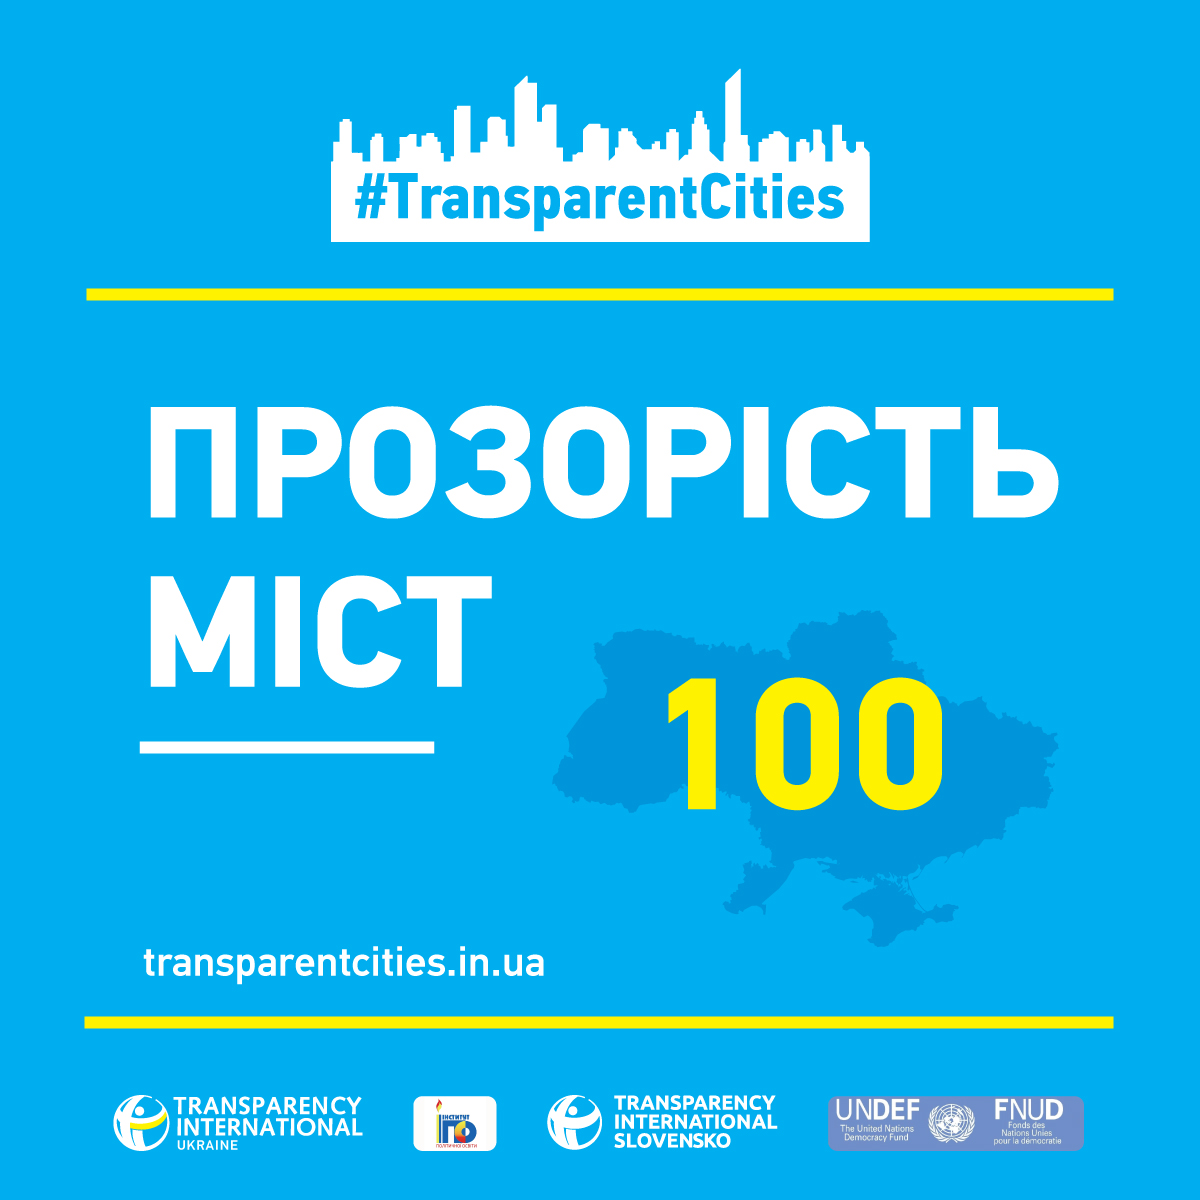 Запорожье занимает 64 место в рейтинге прозрачности крупнейших городов Украины